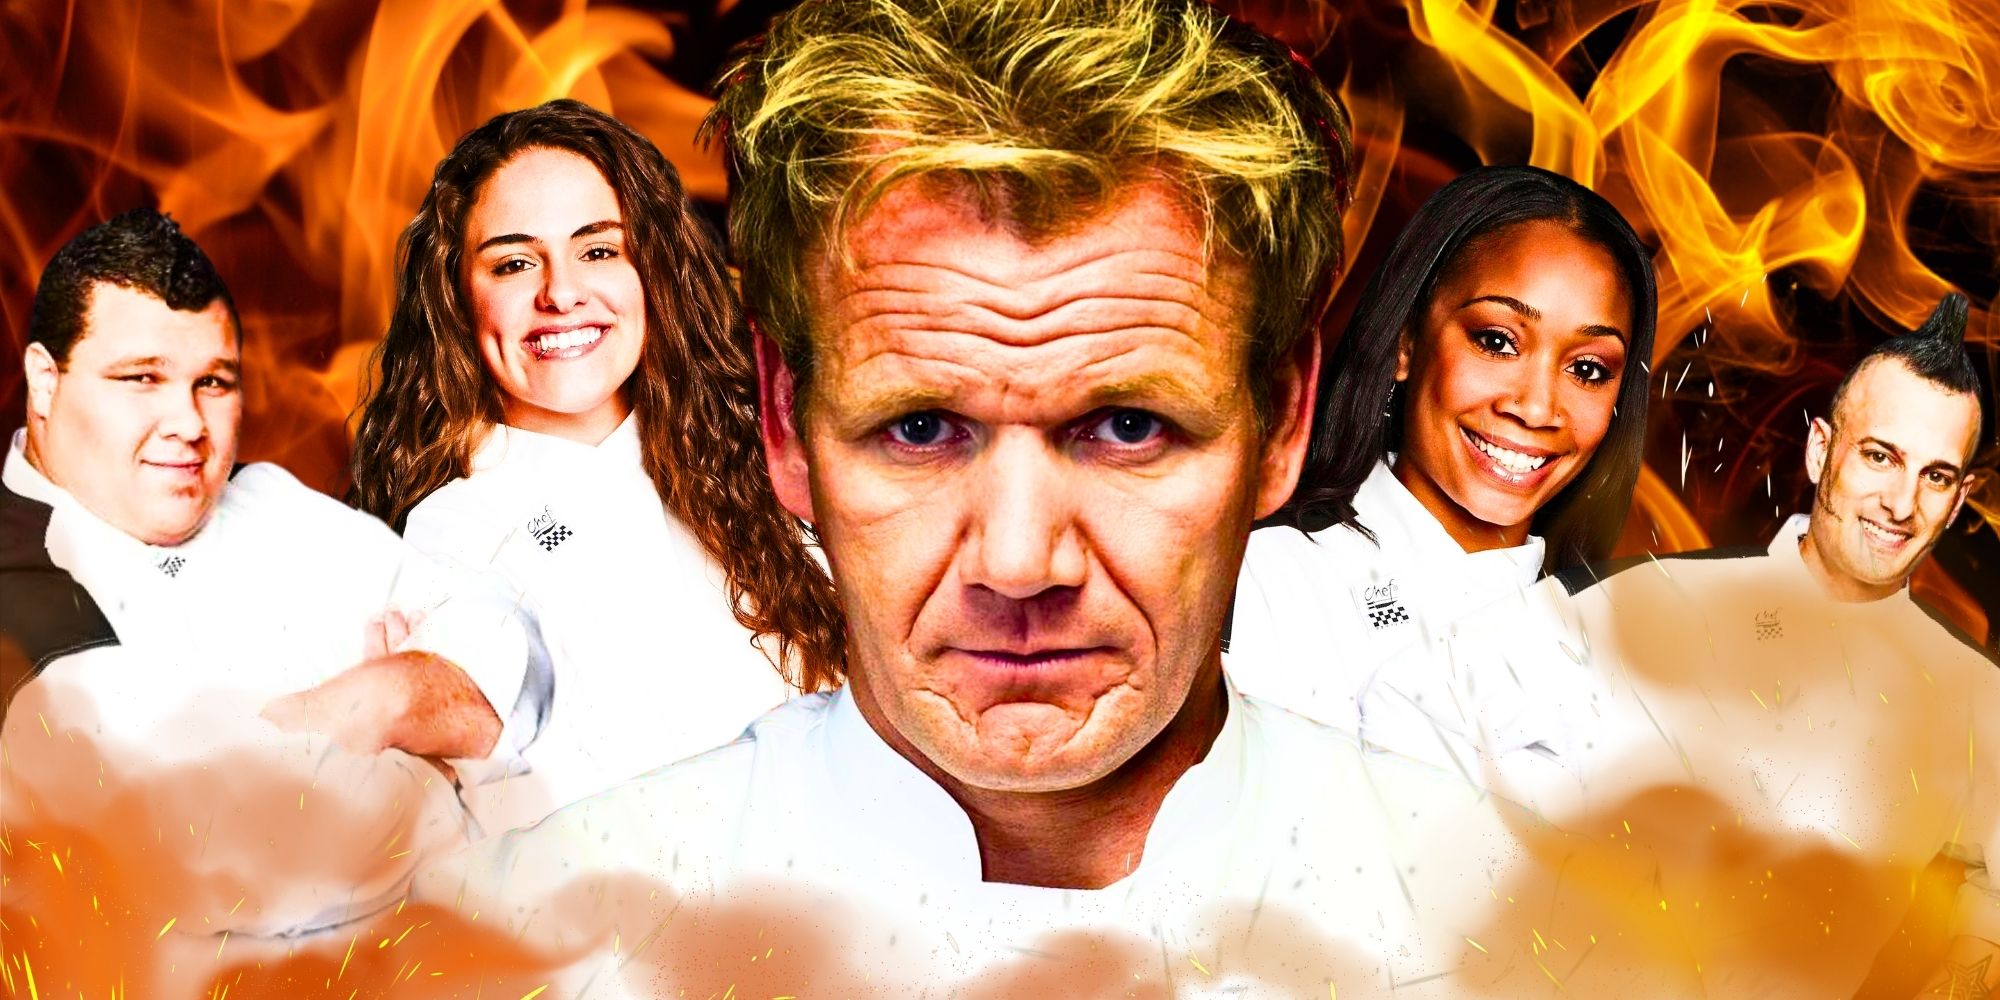 Hell’s Kitchen Temporada 11: ¿Qué pasó con los competidores después del espectáculo?